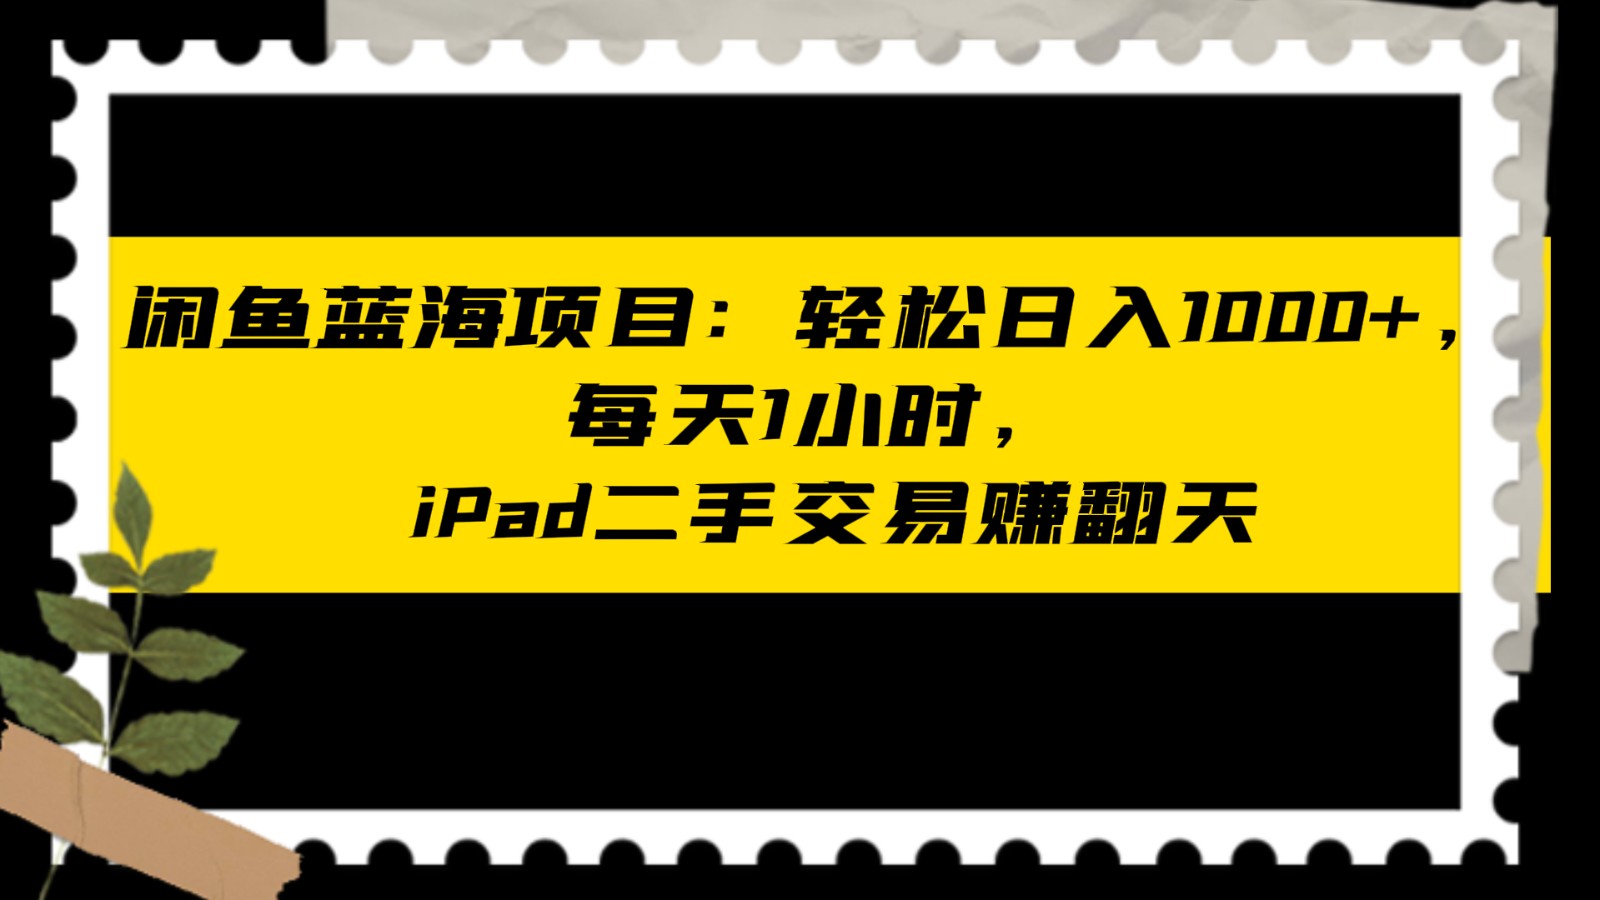 【第6643期】闲鱼蓝海项目iPad轻松日入1000+，每天1小时， iPad二手交易赚翻天